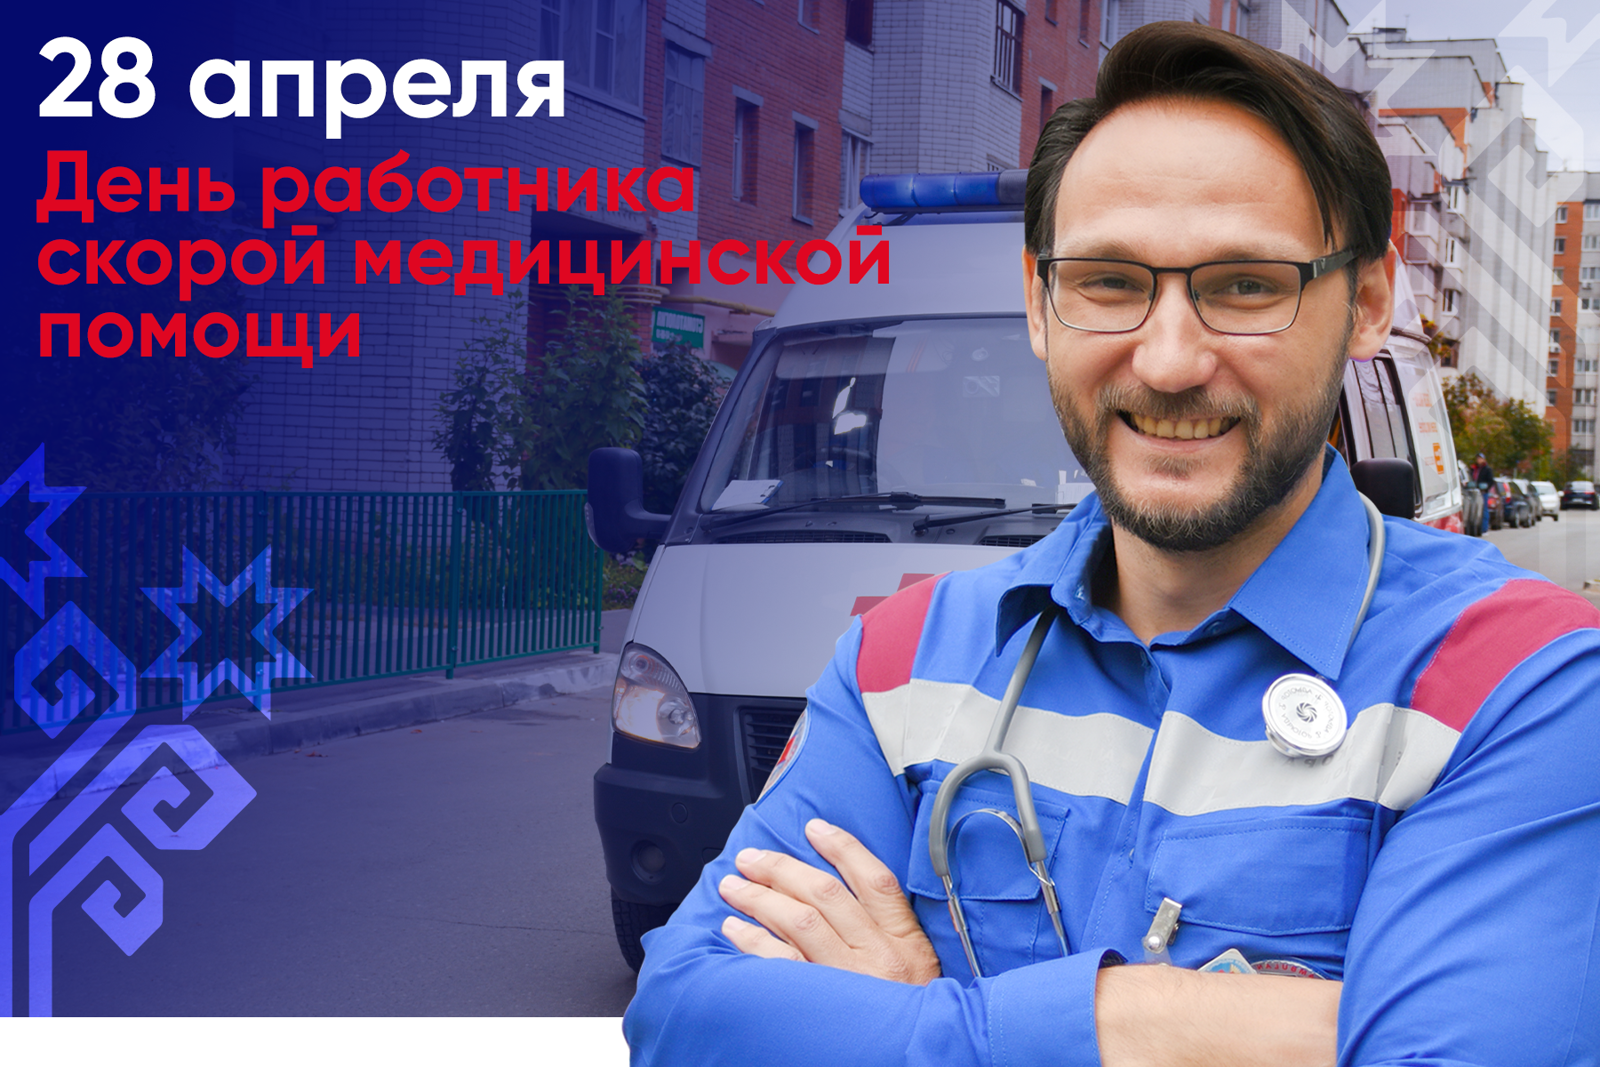 Олег Николаев поздравляет с Днем работников скорой медицинской помощи